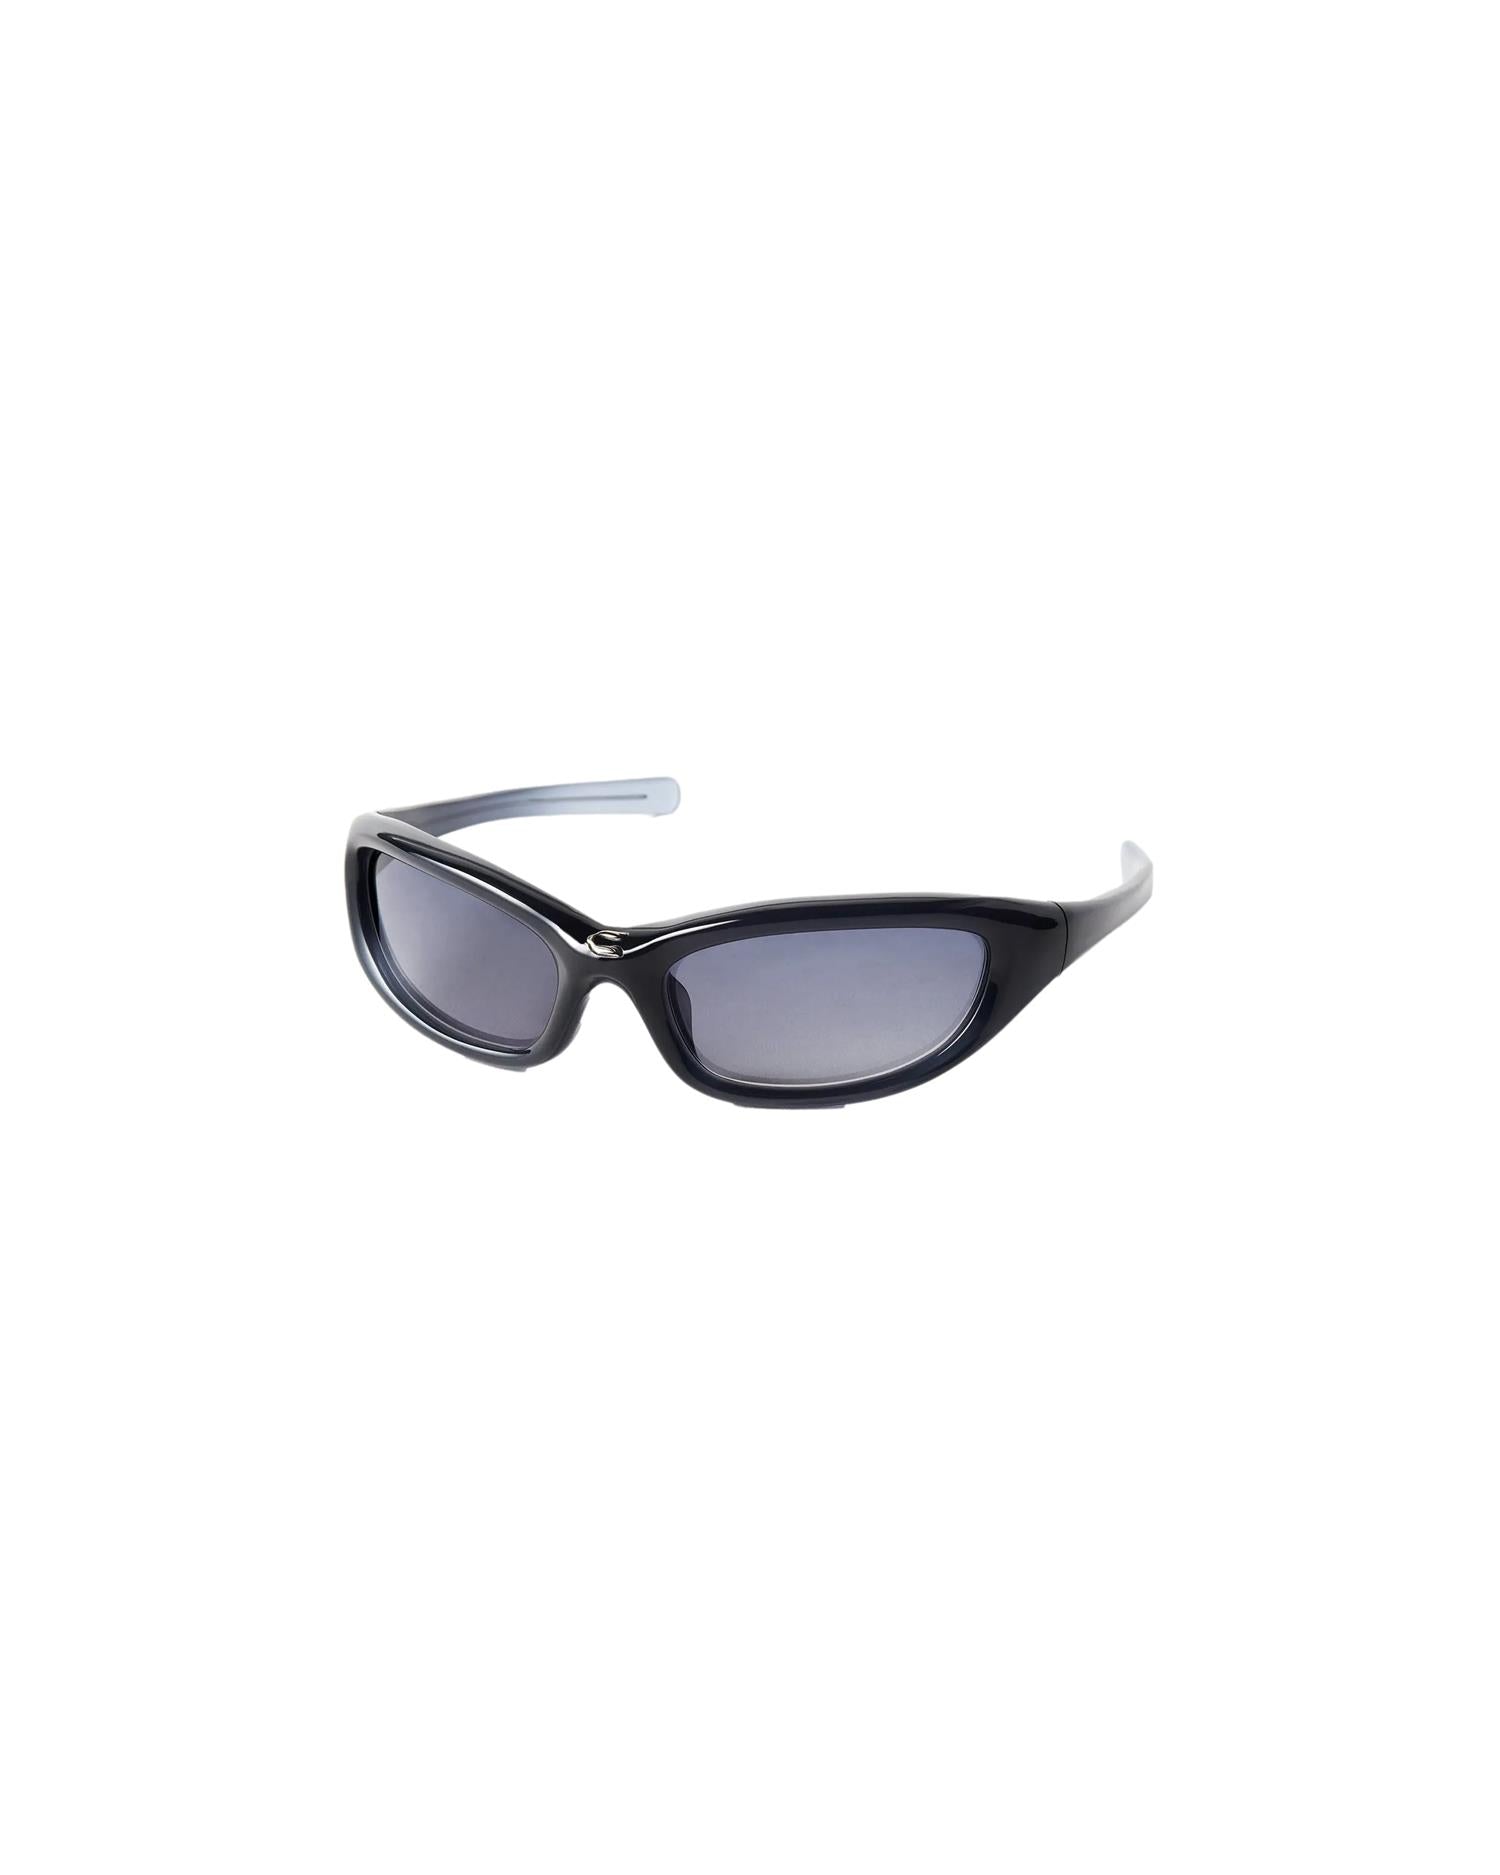 Chimi Eyewear Fog Blue Solbriller Mørkeblå - modostore.no